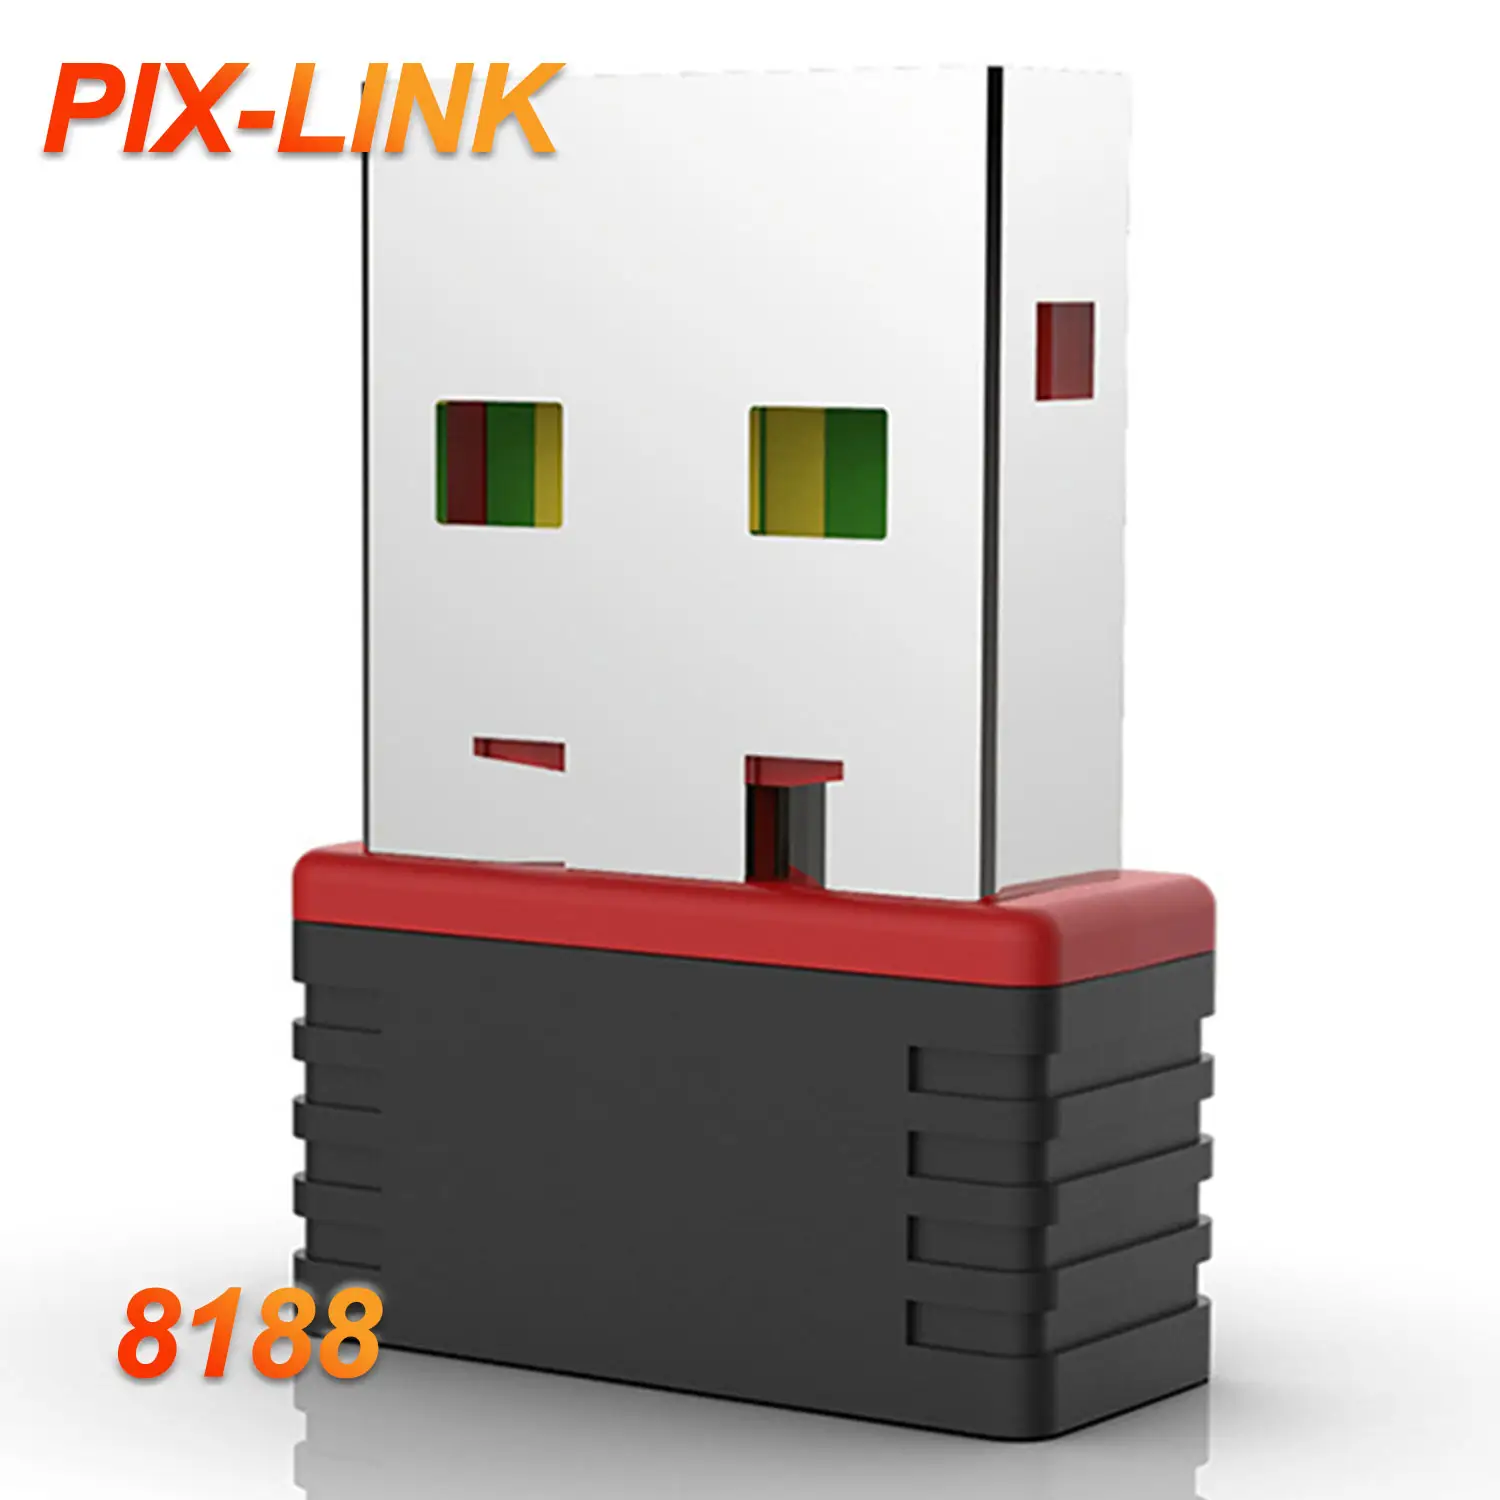 PIX-LINK Precio de fábrica RTL8188 Chipset Mini USB 2,0 WiFi Adaptador inalámbrico Tarjeta de red WI-FI 802.11n 150Mbps Red WI FI Adapte